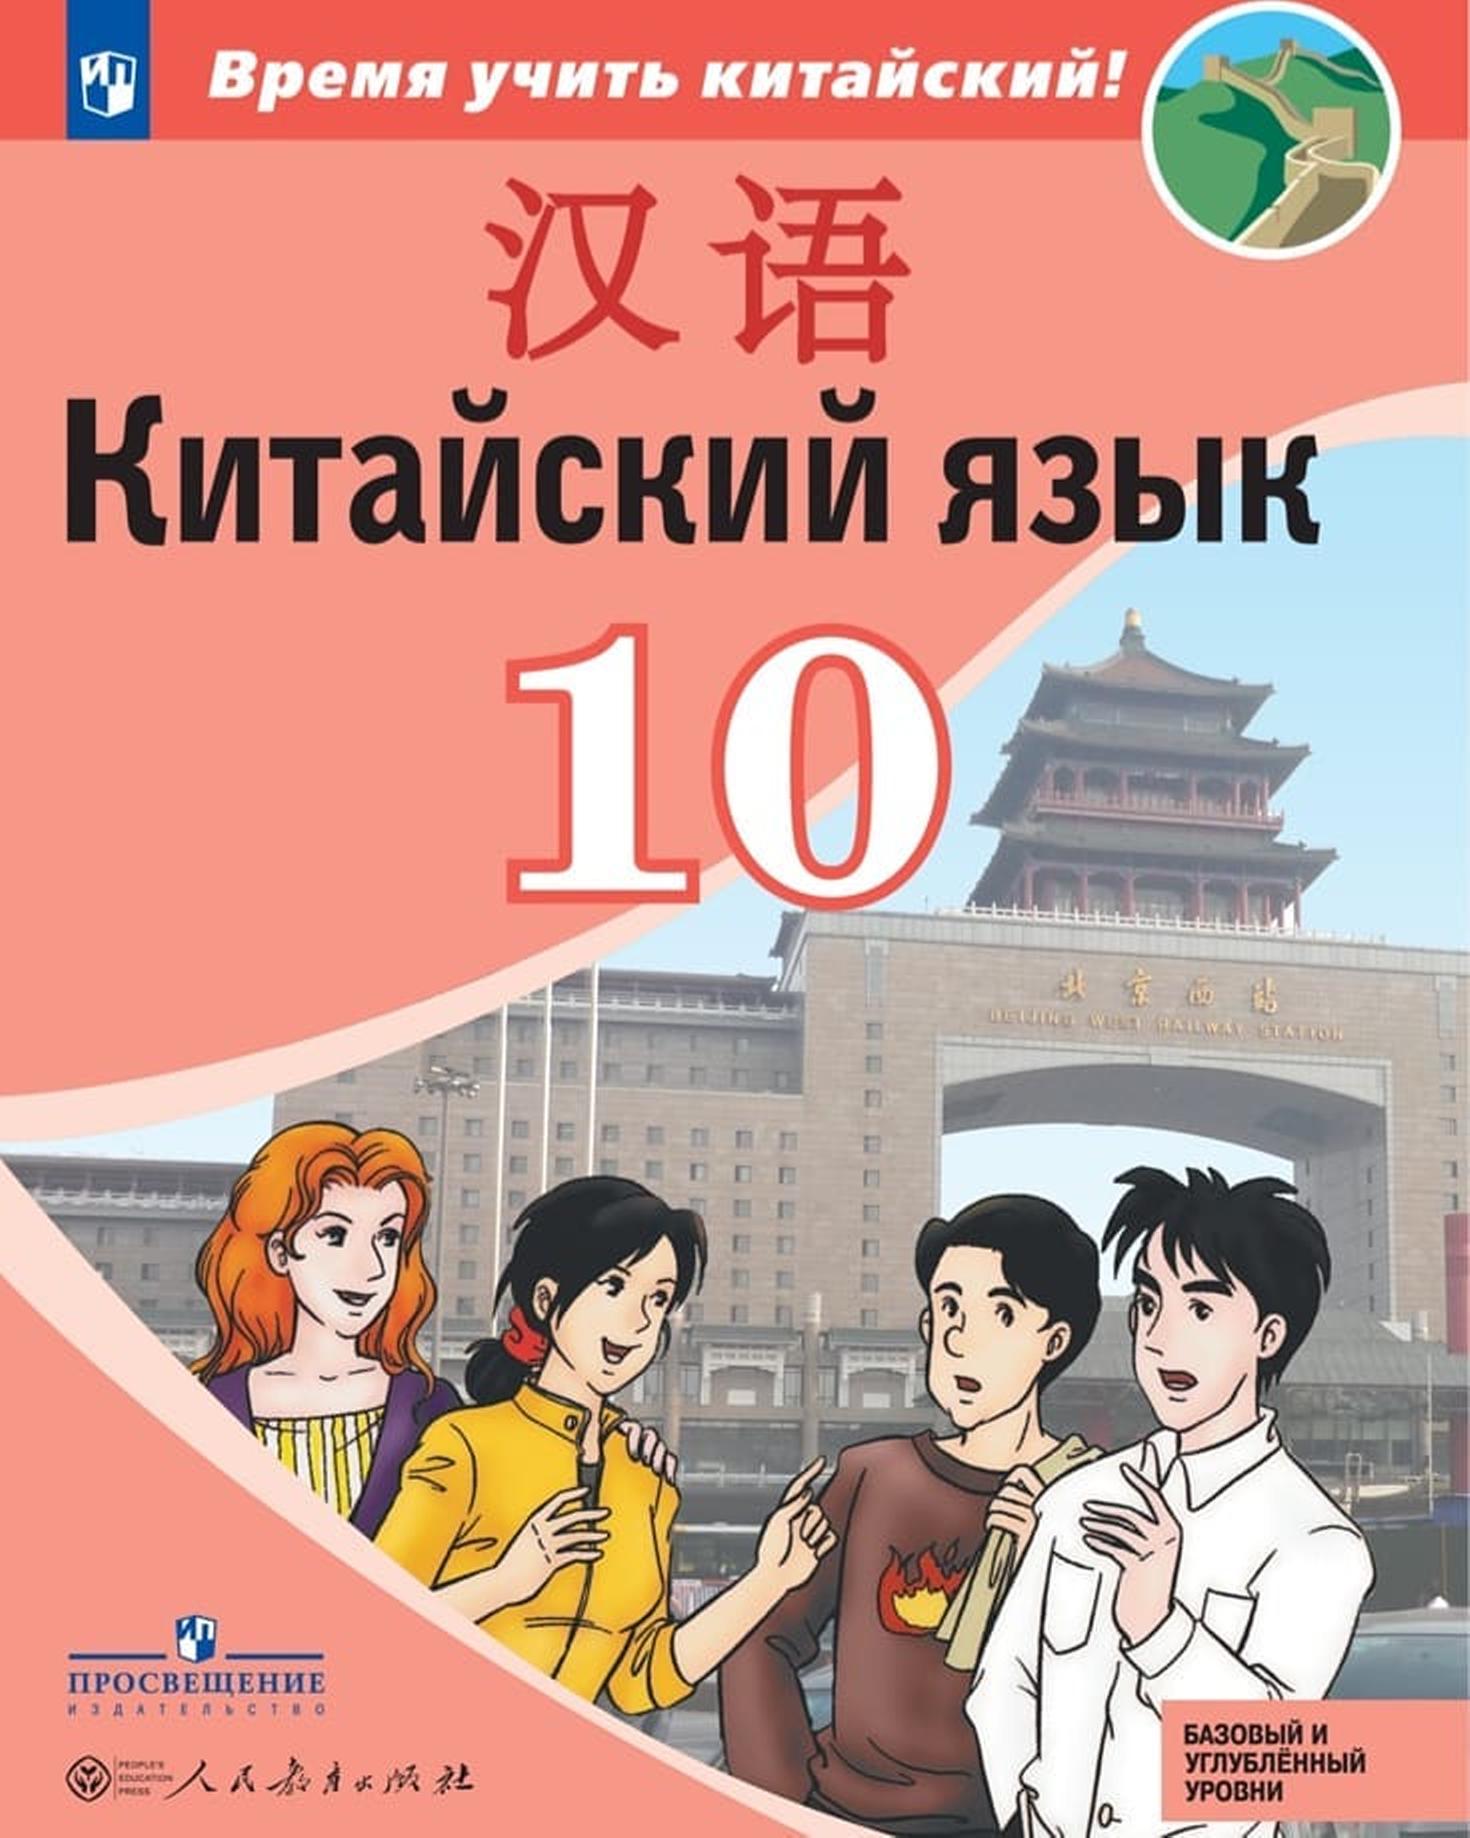 Китайский язык. Второй иностранный язык. 10 класс: базовый и углублённый уровни: учебник для общеобразовательных организаций